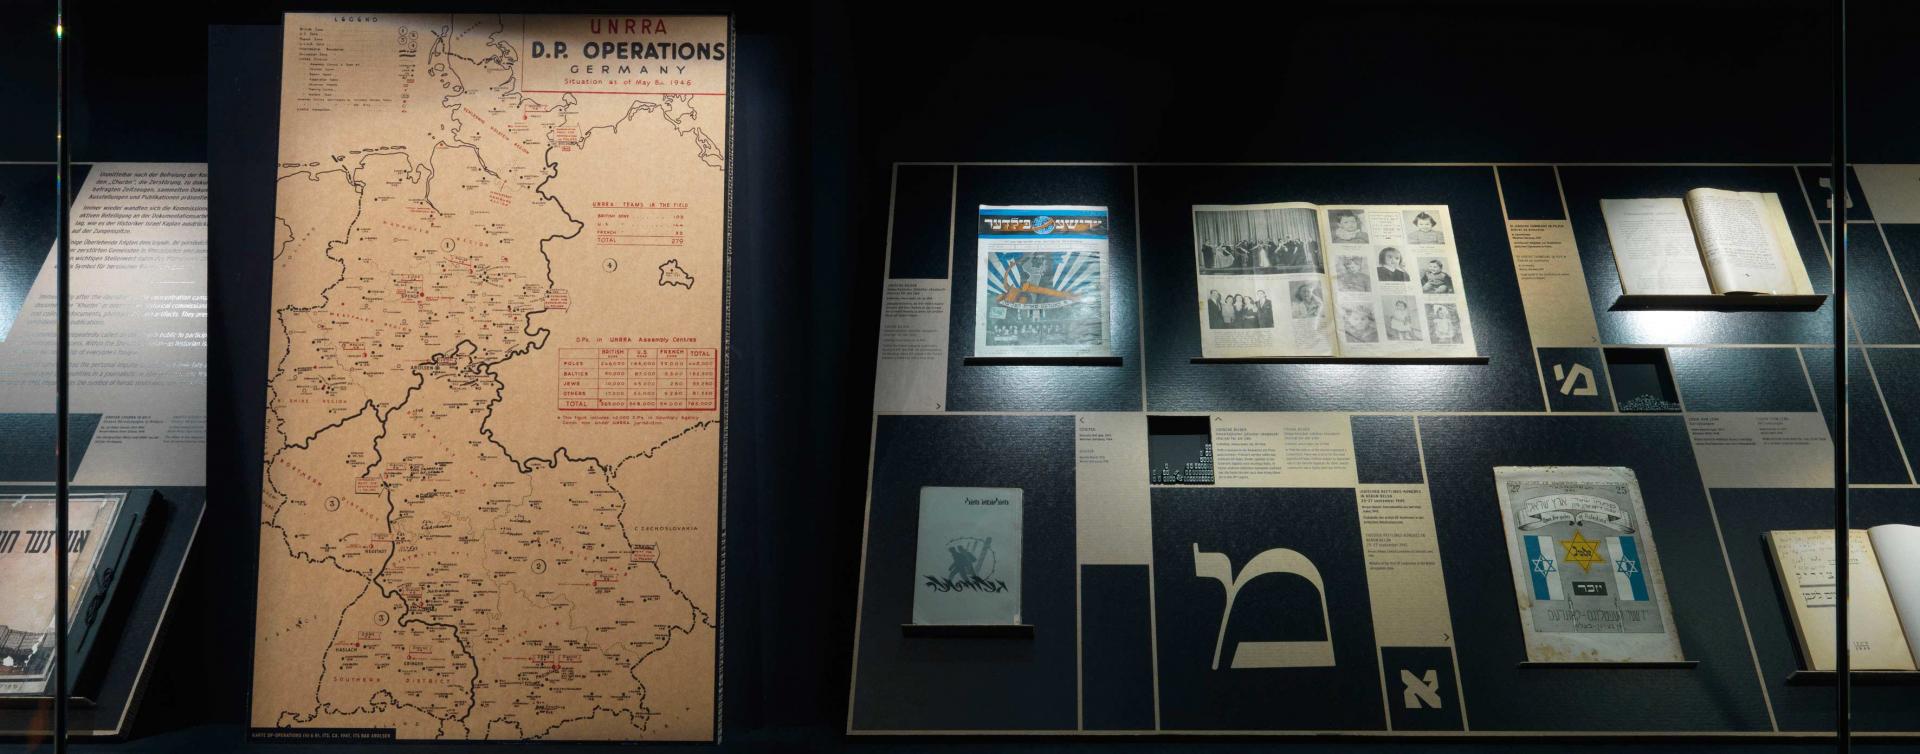 Eine Vitrine mit einer Deutschlandkarte, auf der DP-Lager verzeichnet sind, verschiedenen Publikationen und hebräischen Lettern in verschiedener Typografie